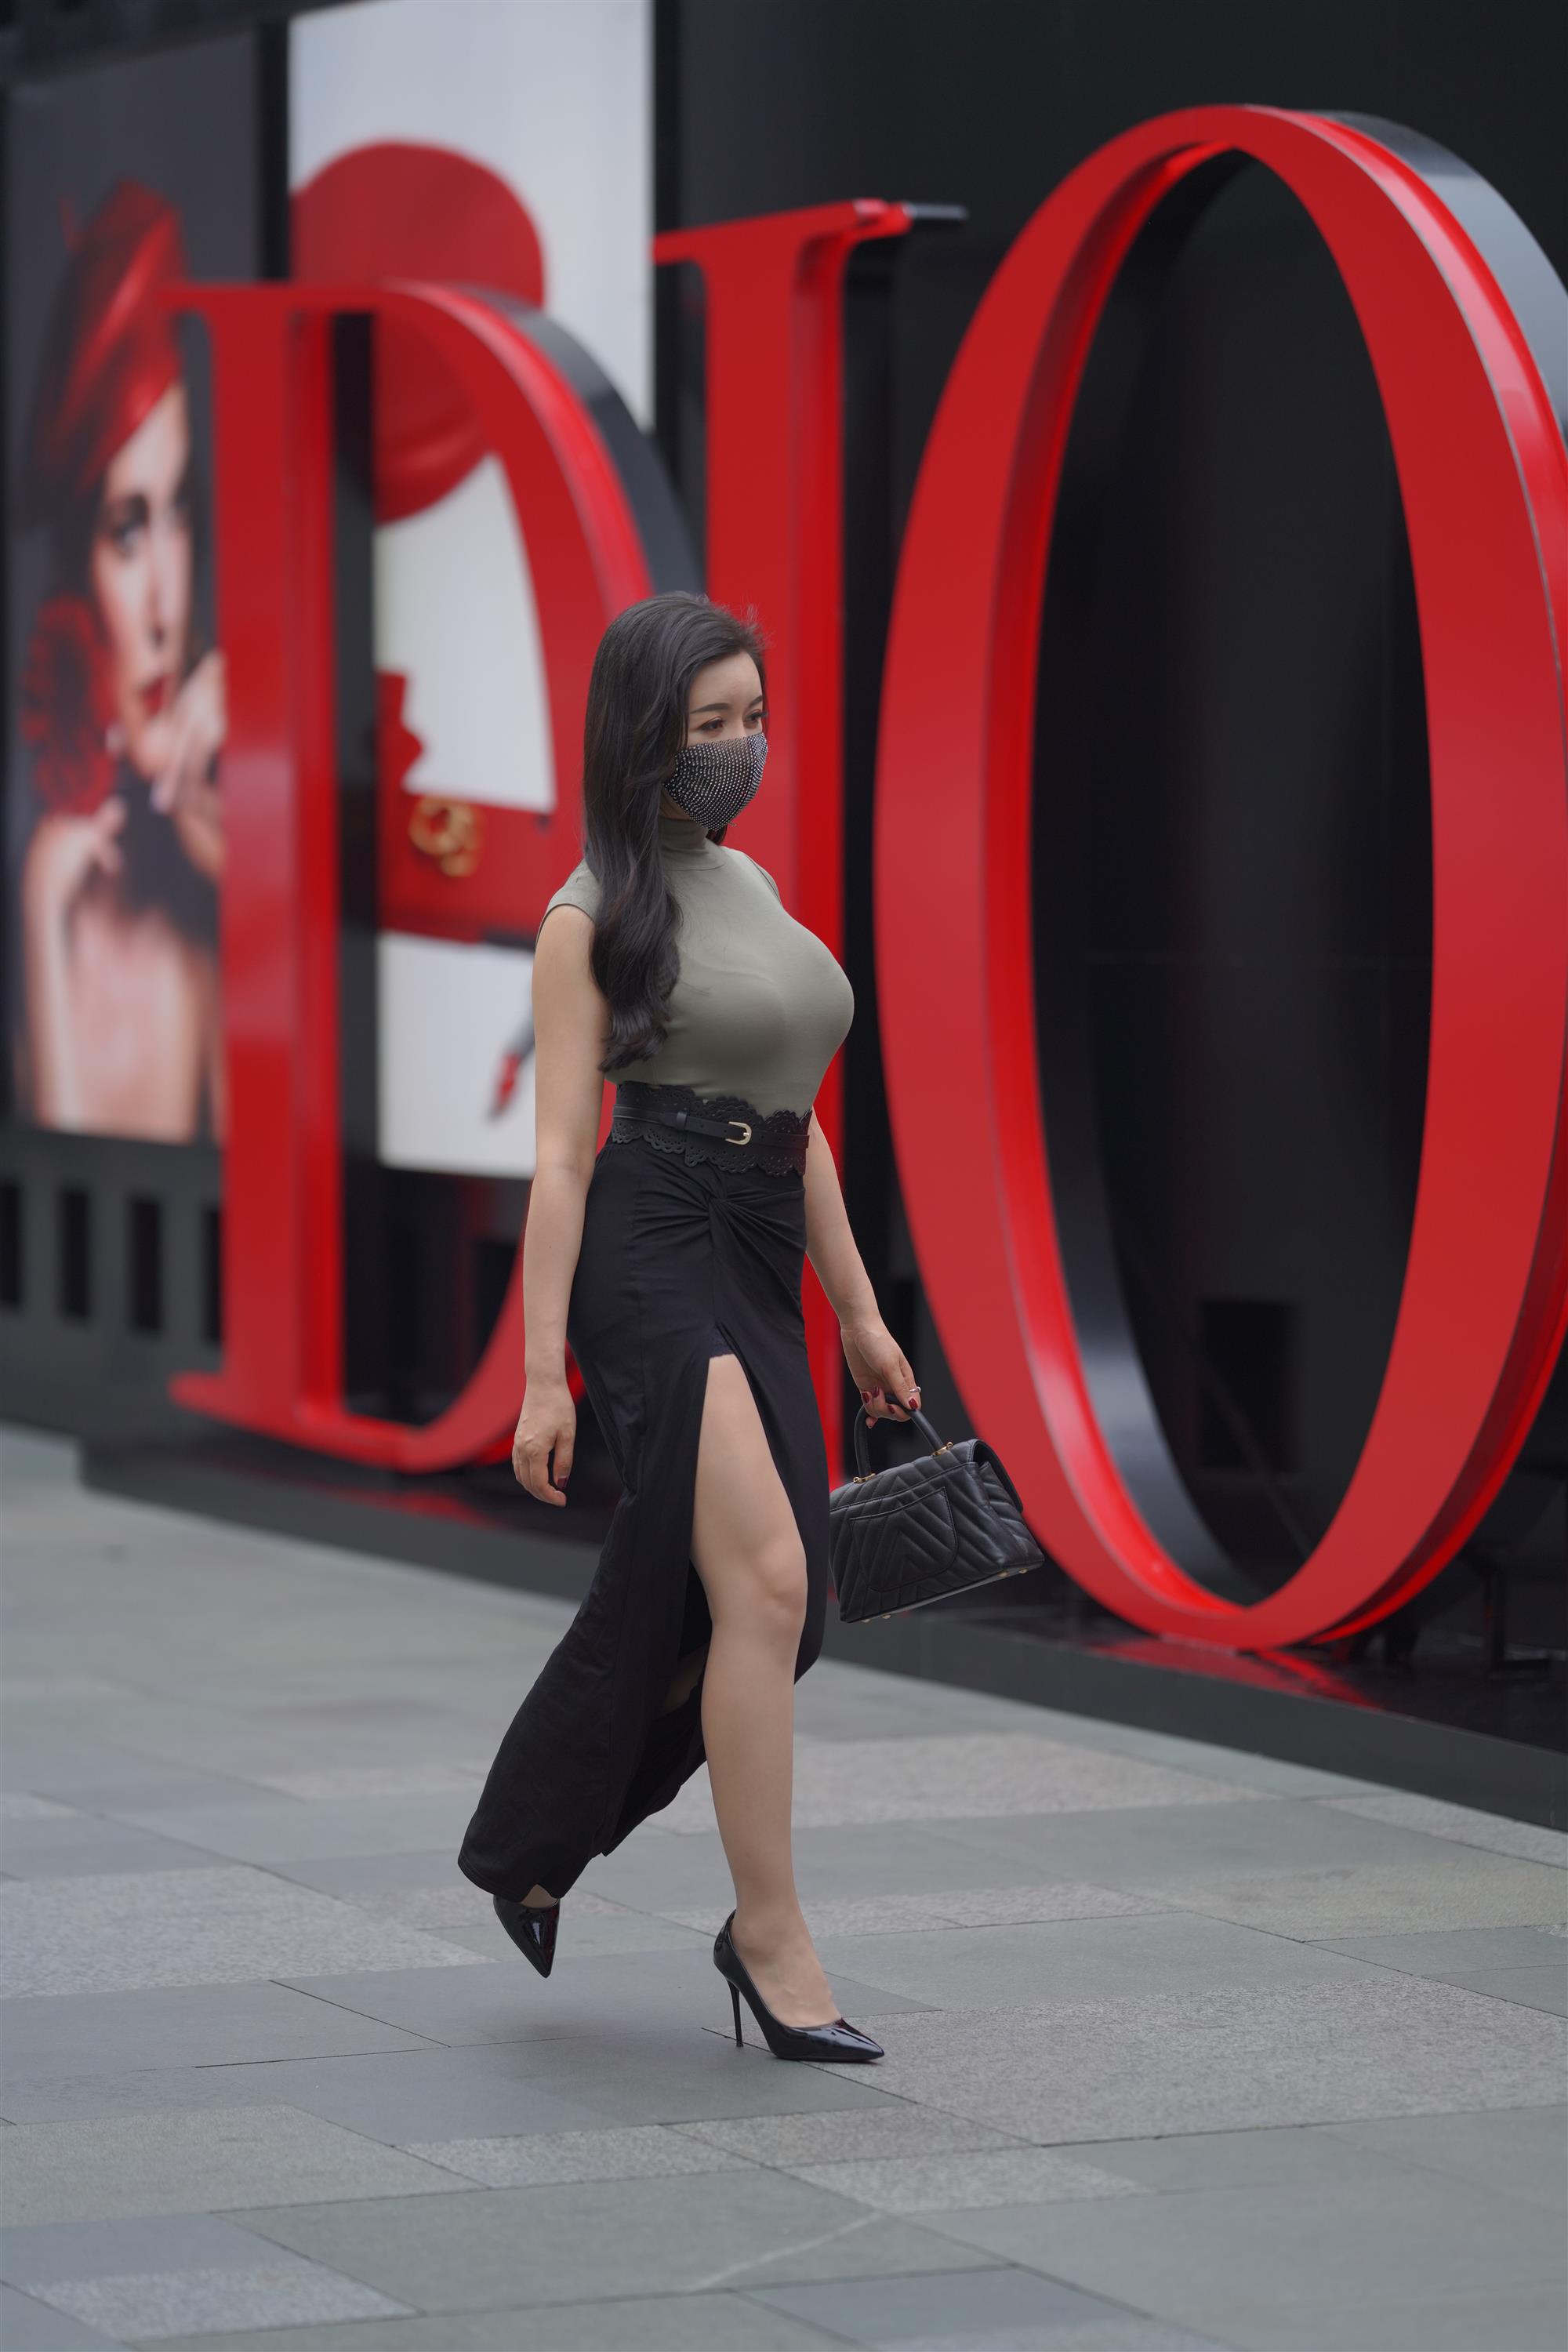 Street 欣儿 Long black skirt - 123.jpg